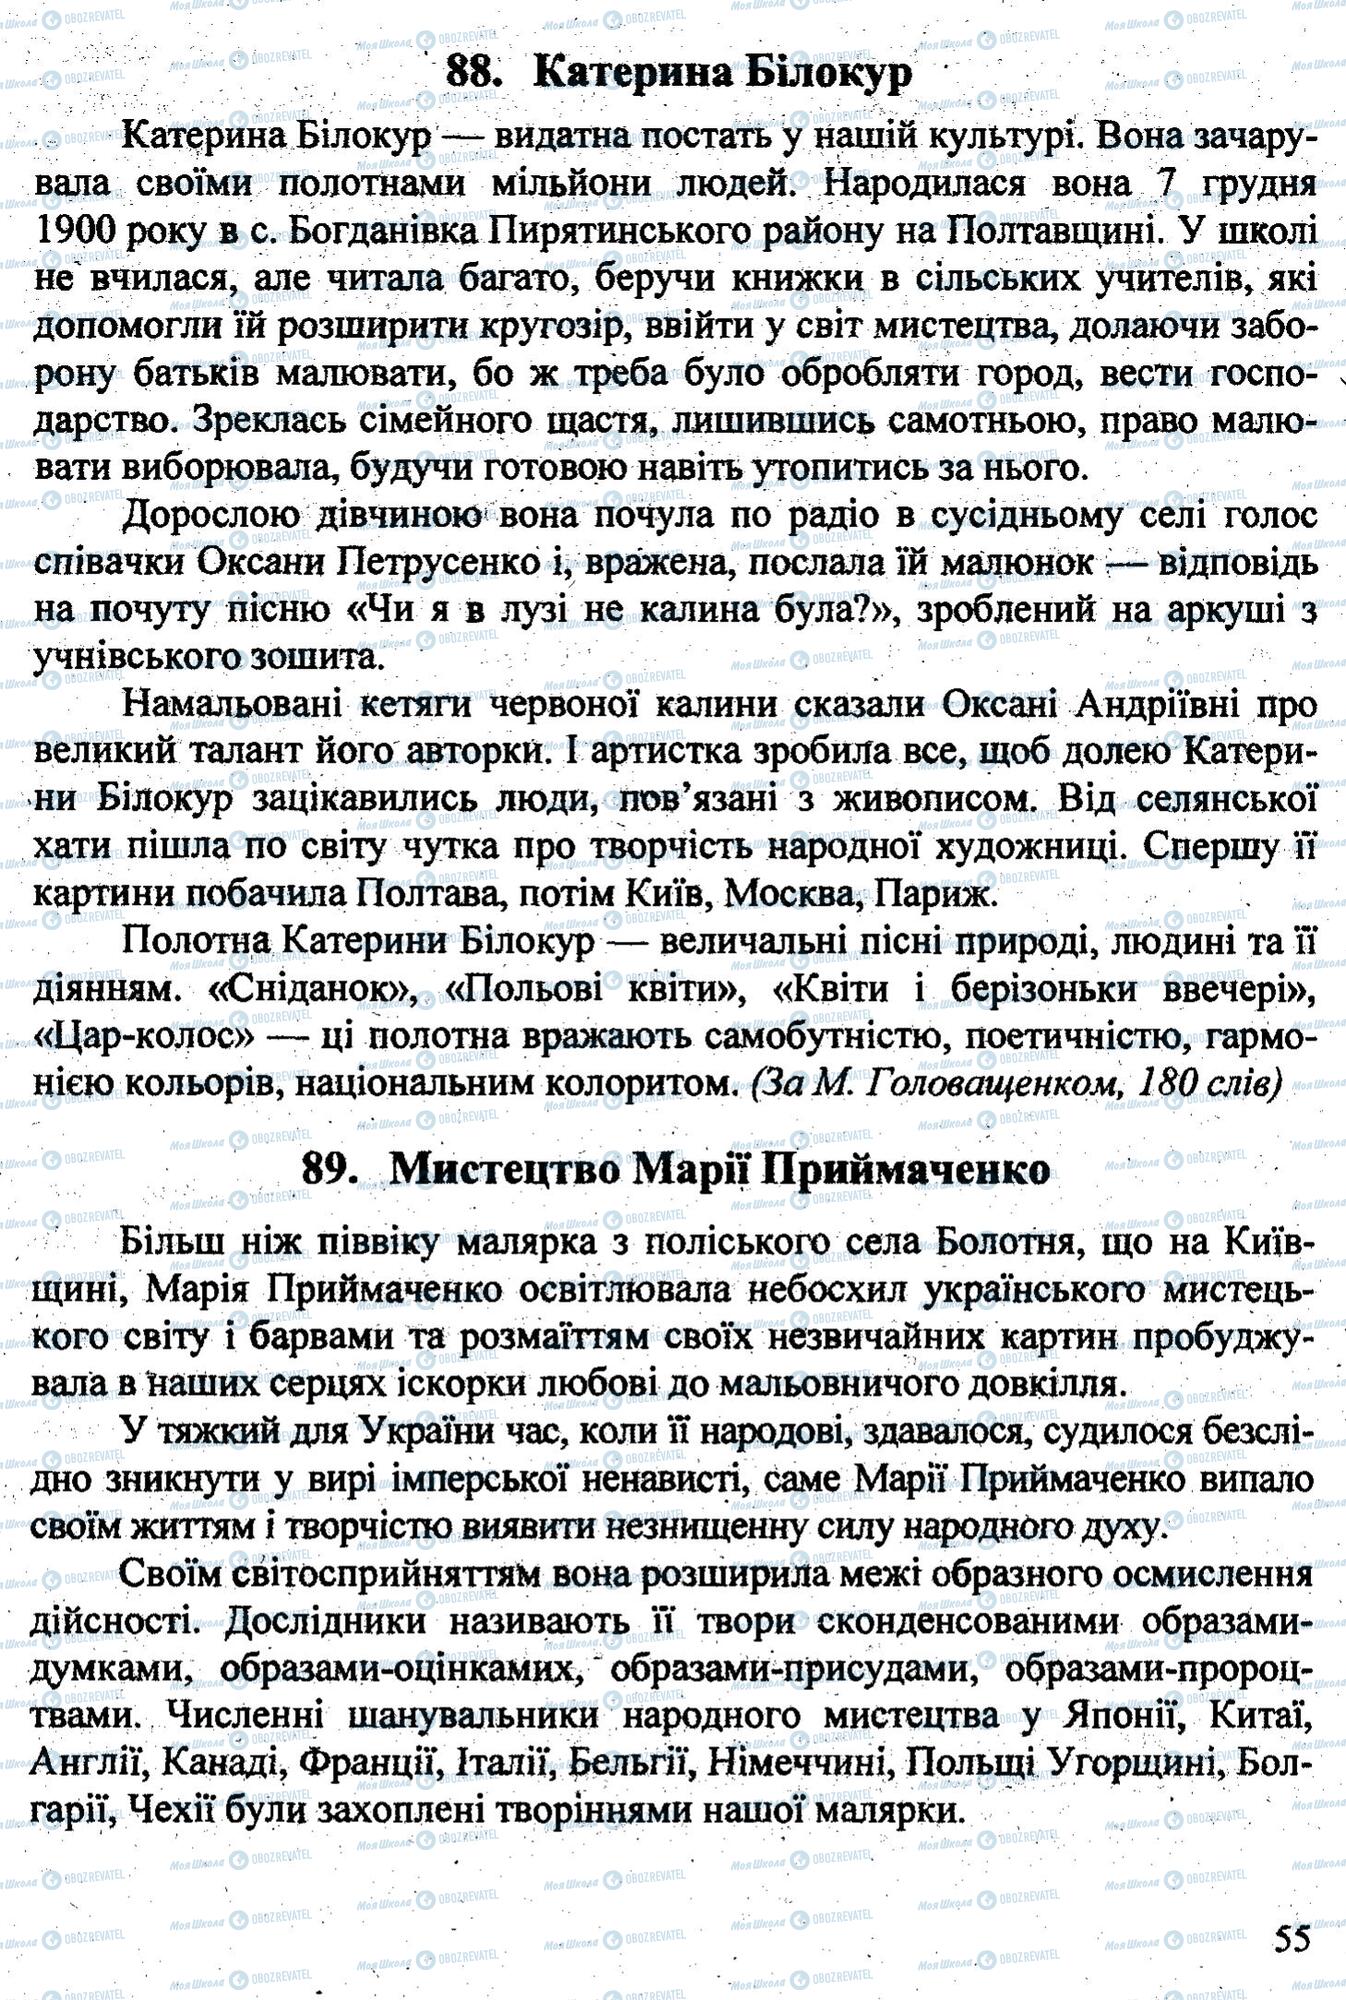 ДПА Укр мова 9 класс страница 0054